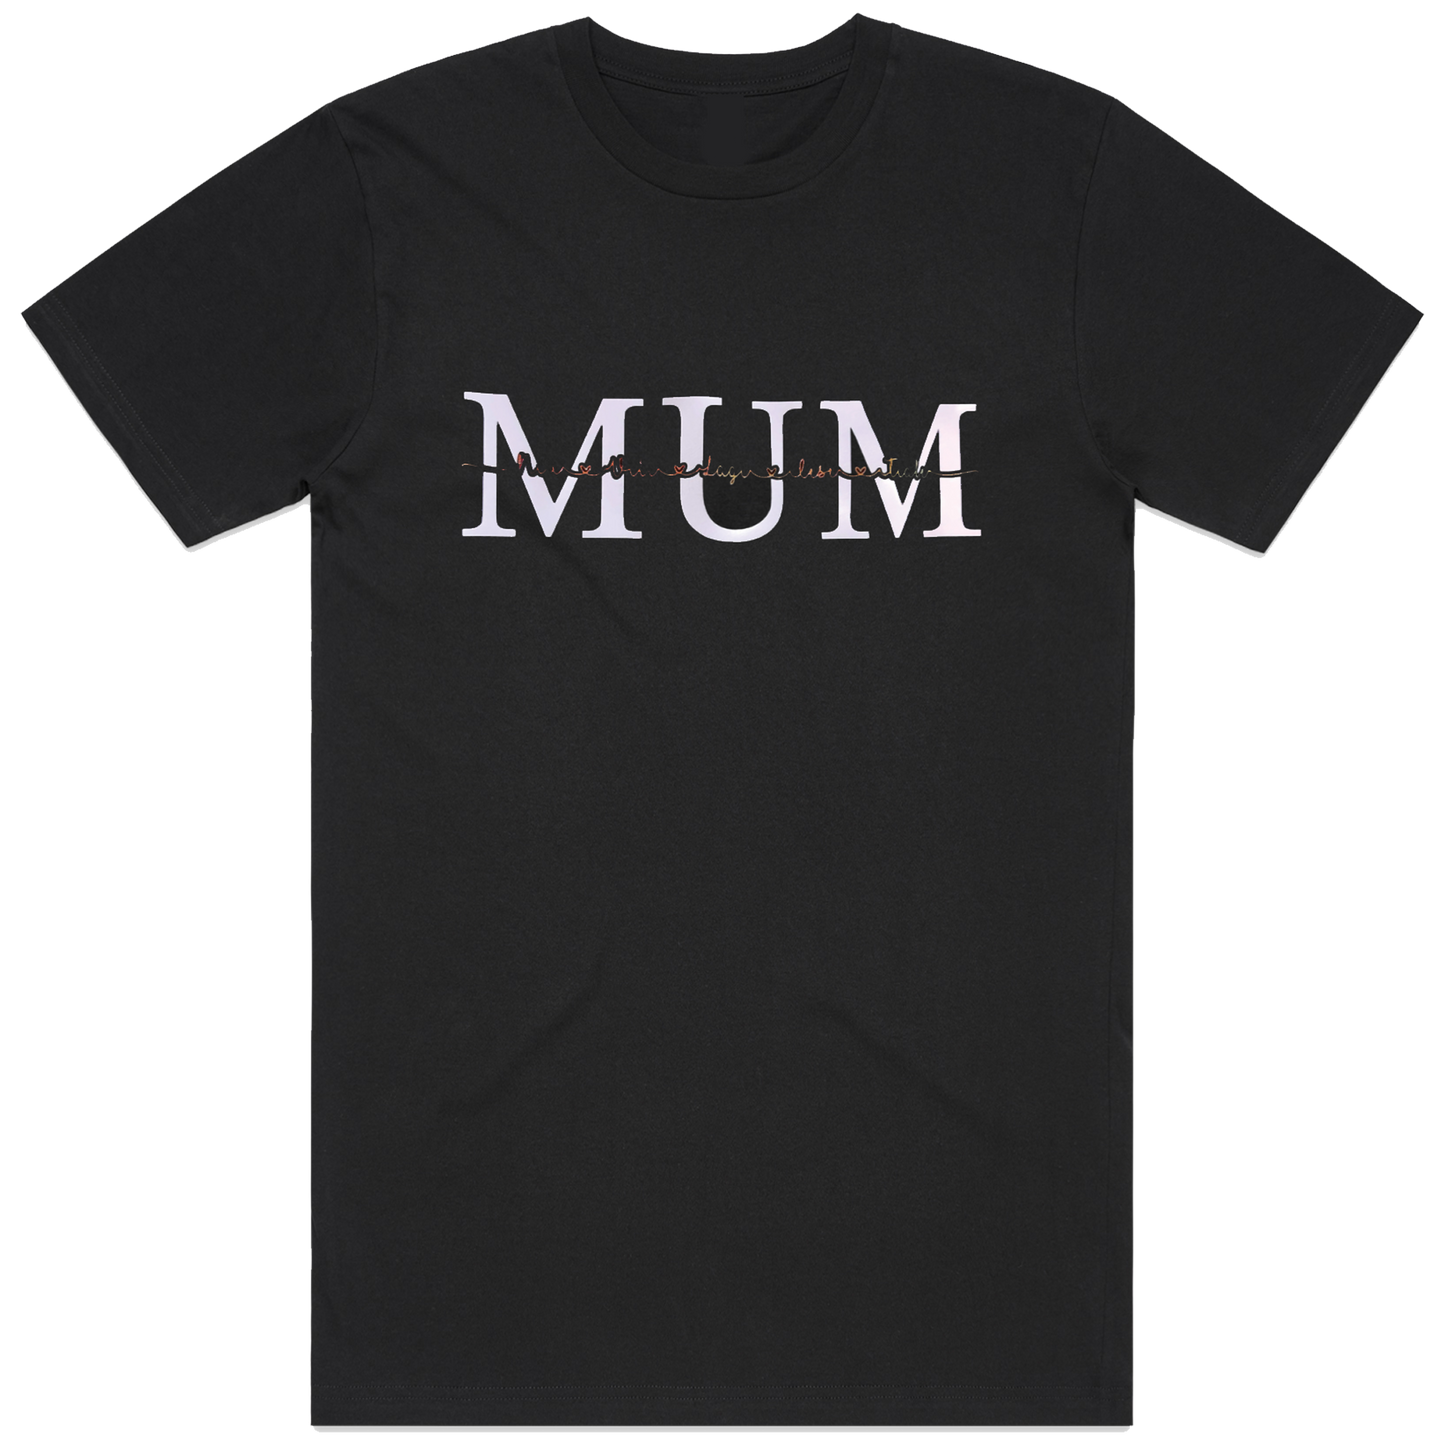 Mum/Mama/Nana/Nena T-shirt - Craft Your Keepsake!